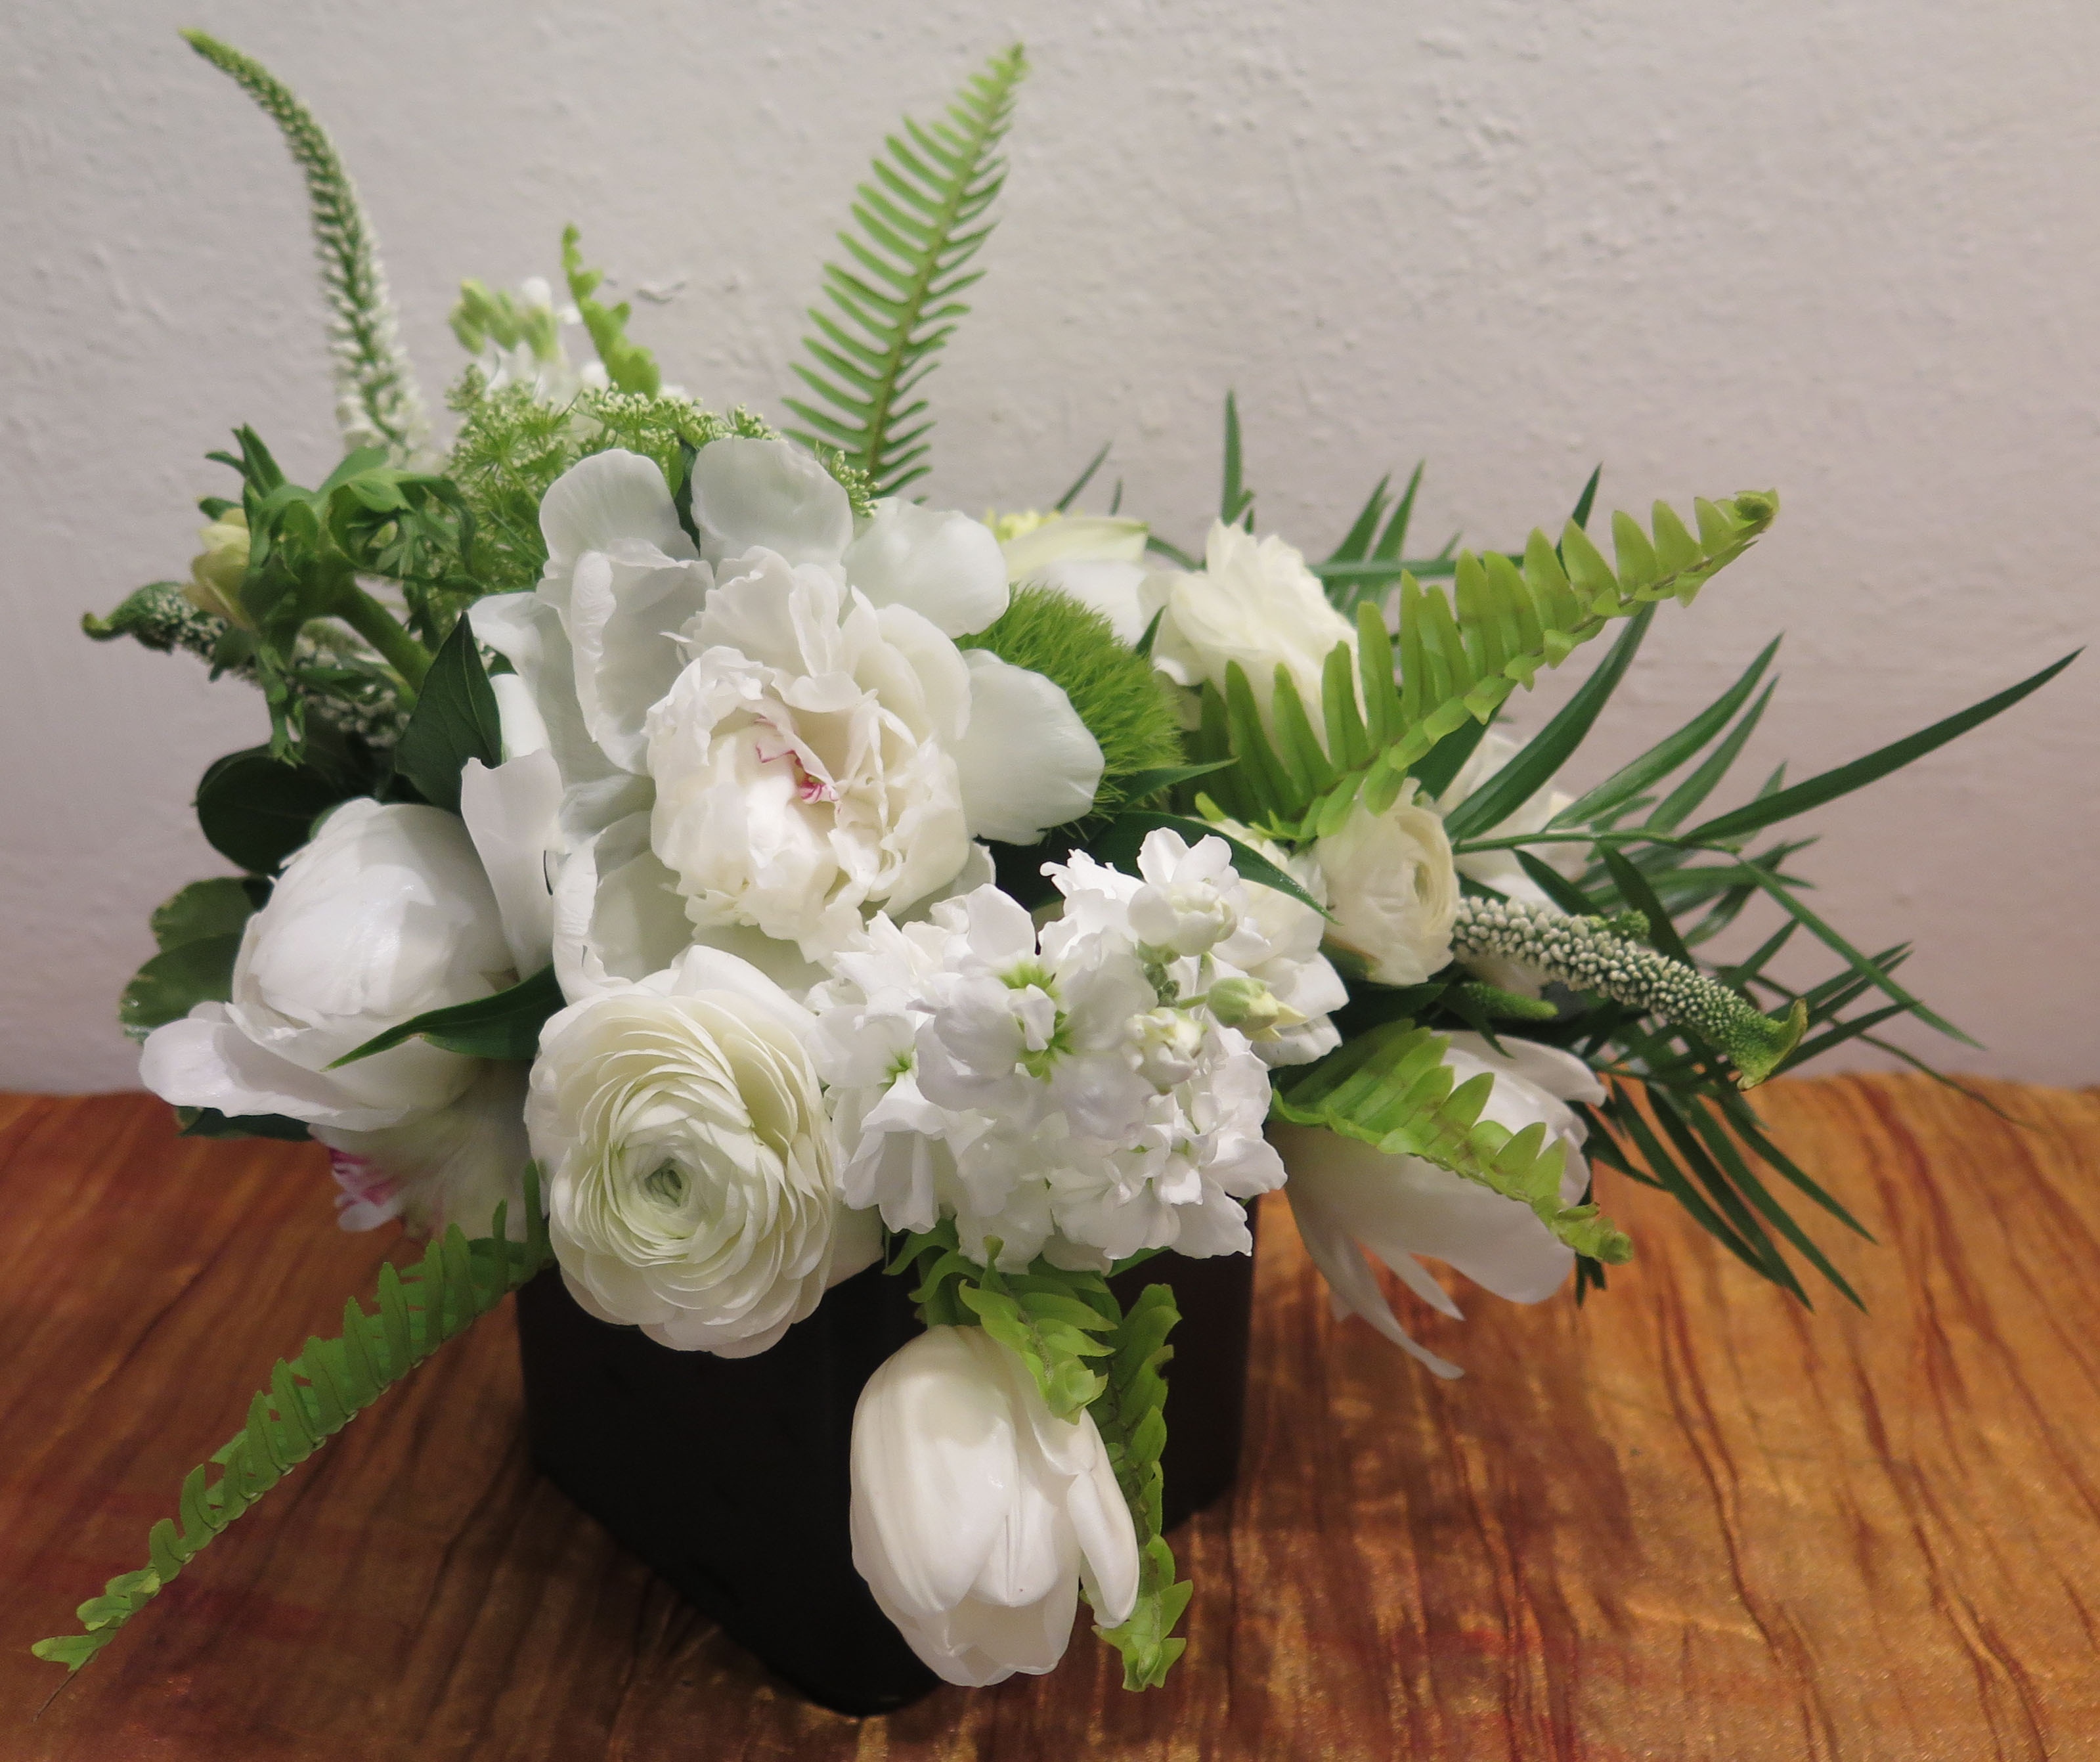 36 Fresh Anemone Flower Arrangements | Flower Design and Arrangement ...